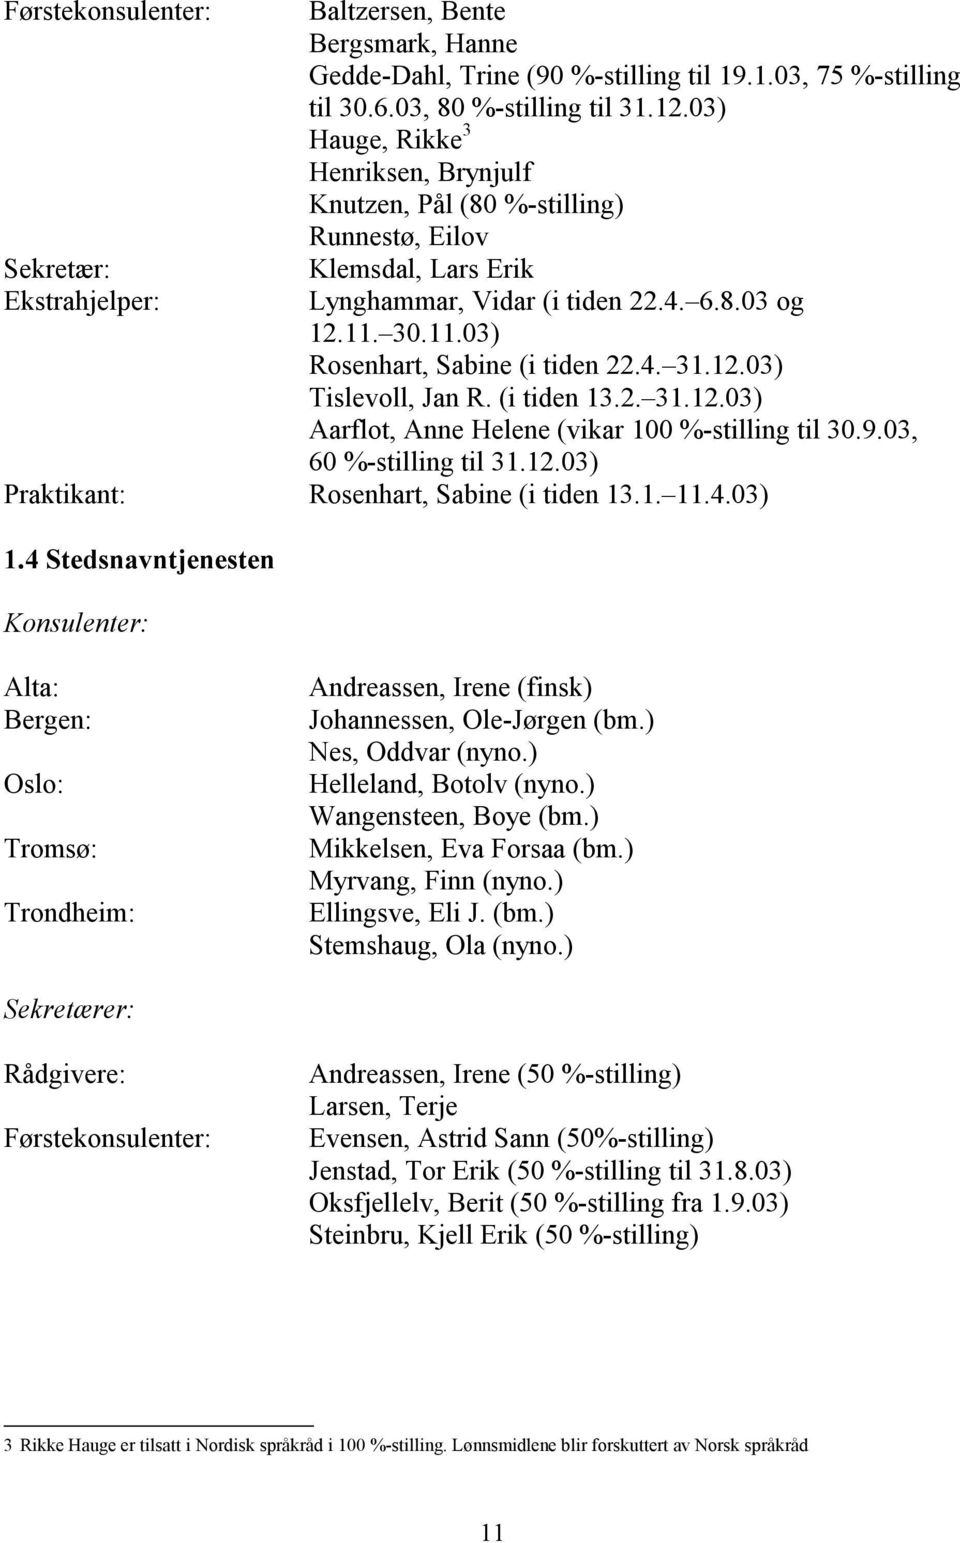 12.03) Tislevoll, Jan R. (i tiden 13.2. 31.12.03) Aarflot, Anne Helene (vikar 100 %-stilling til 30.9.03, 60 %-stilling til 31.12.03) Praktikant: Rosenhart, Sabine (i tiden 13.1. 11.4.03) 1.